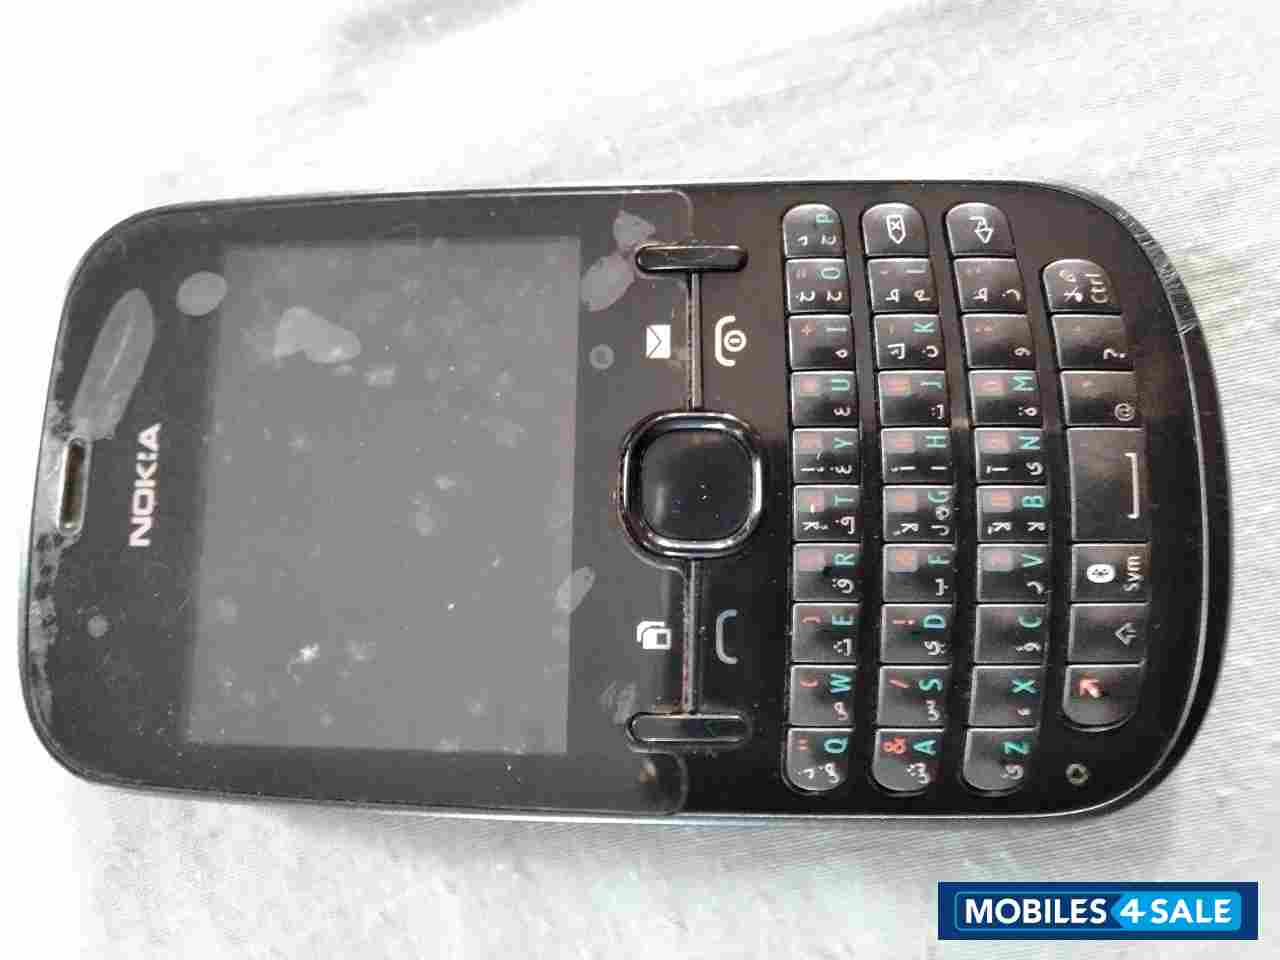 Nokia  Asha 200